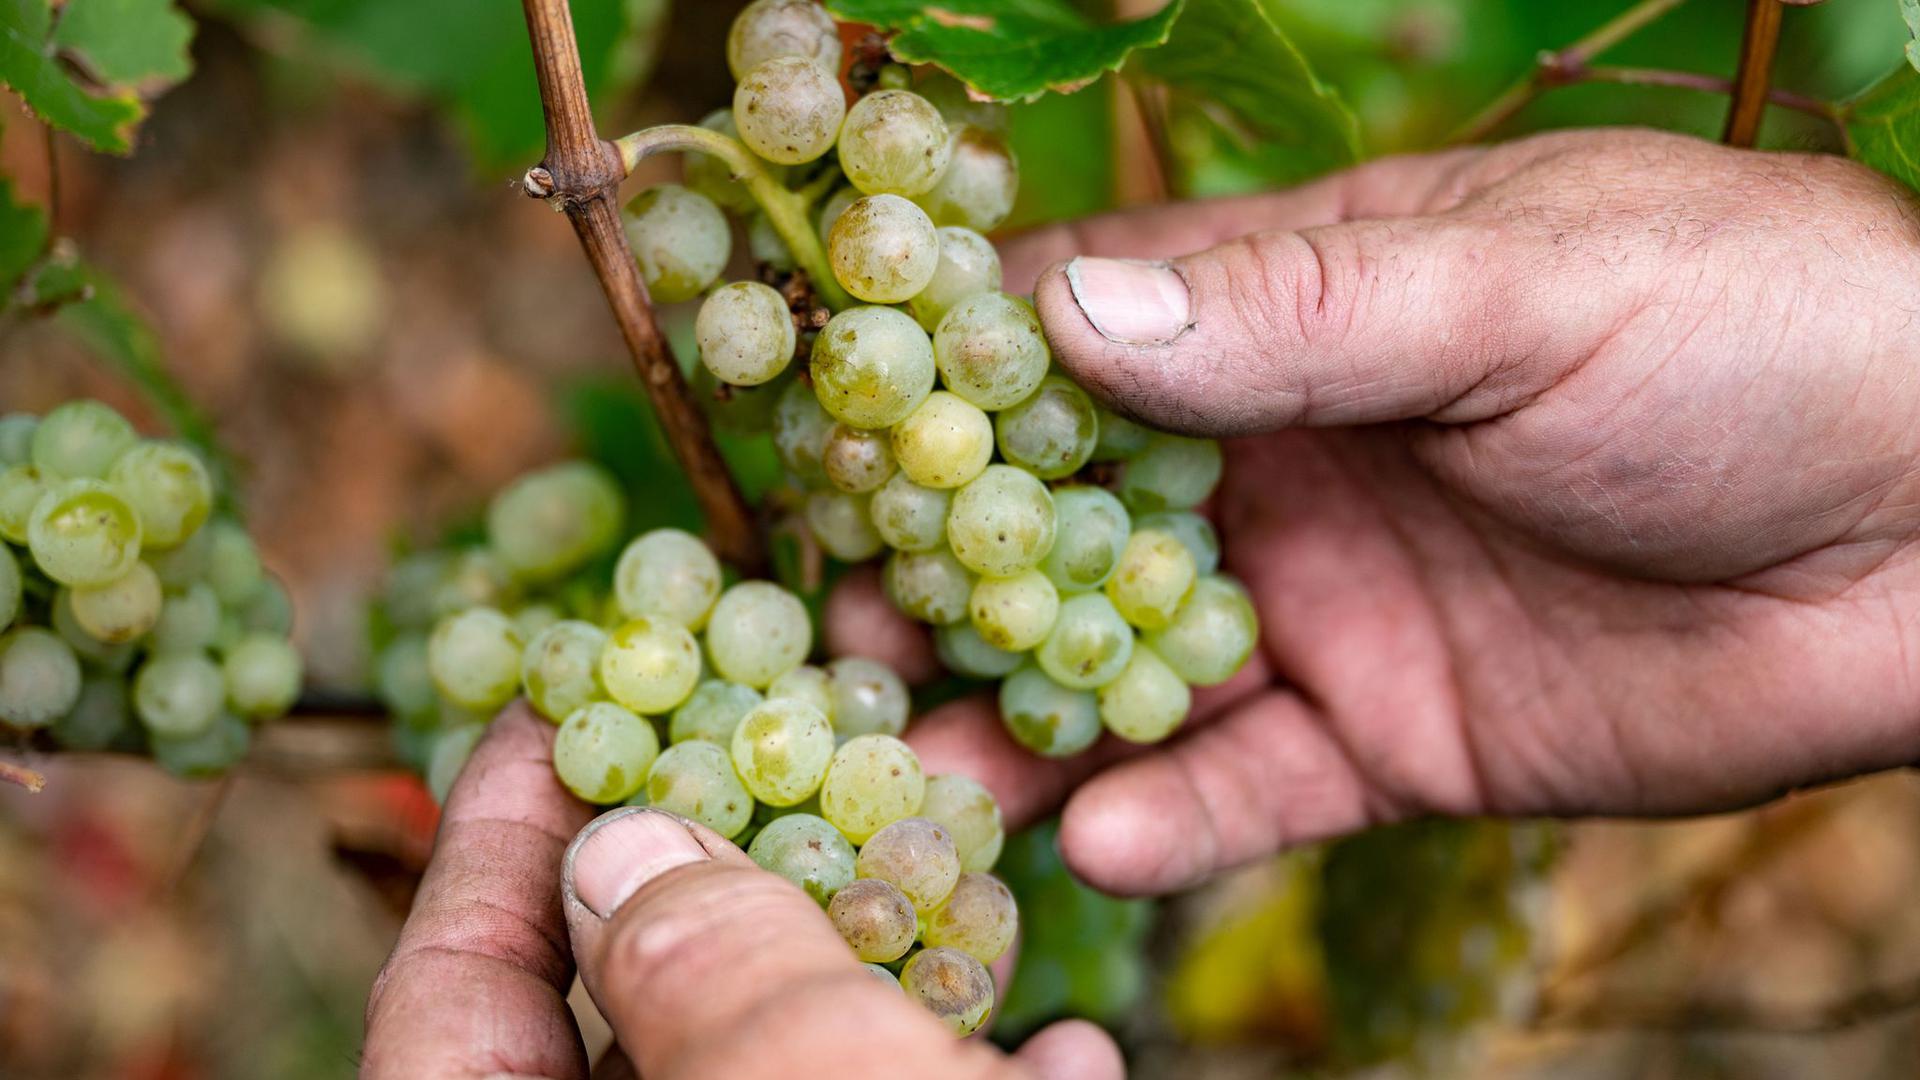 Für Frankreichs Winzer zeichnen sich historisch schlechte Erträge ab. Die Weinbauern im Elsass an der Grenze zu Baden-Württemberg trifft es mit um 12 Prozent geringere Ertragsaussichten vergleichsweise milde.